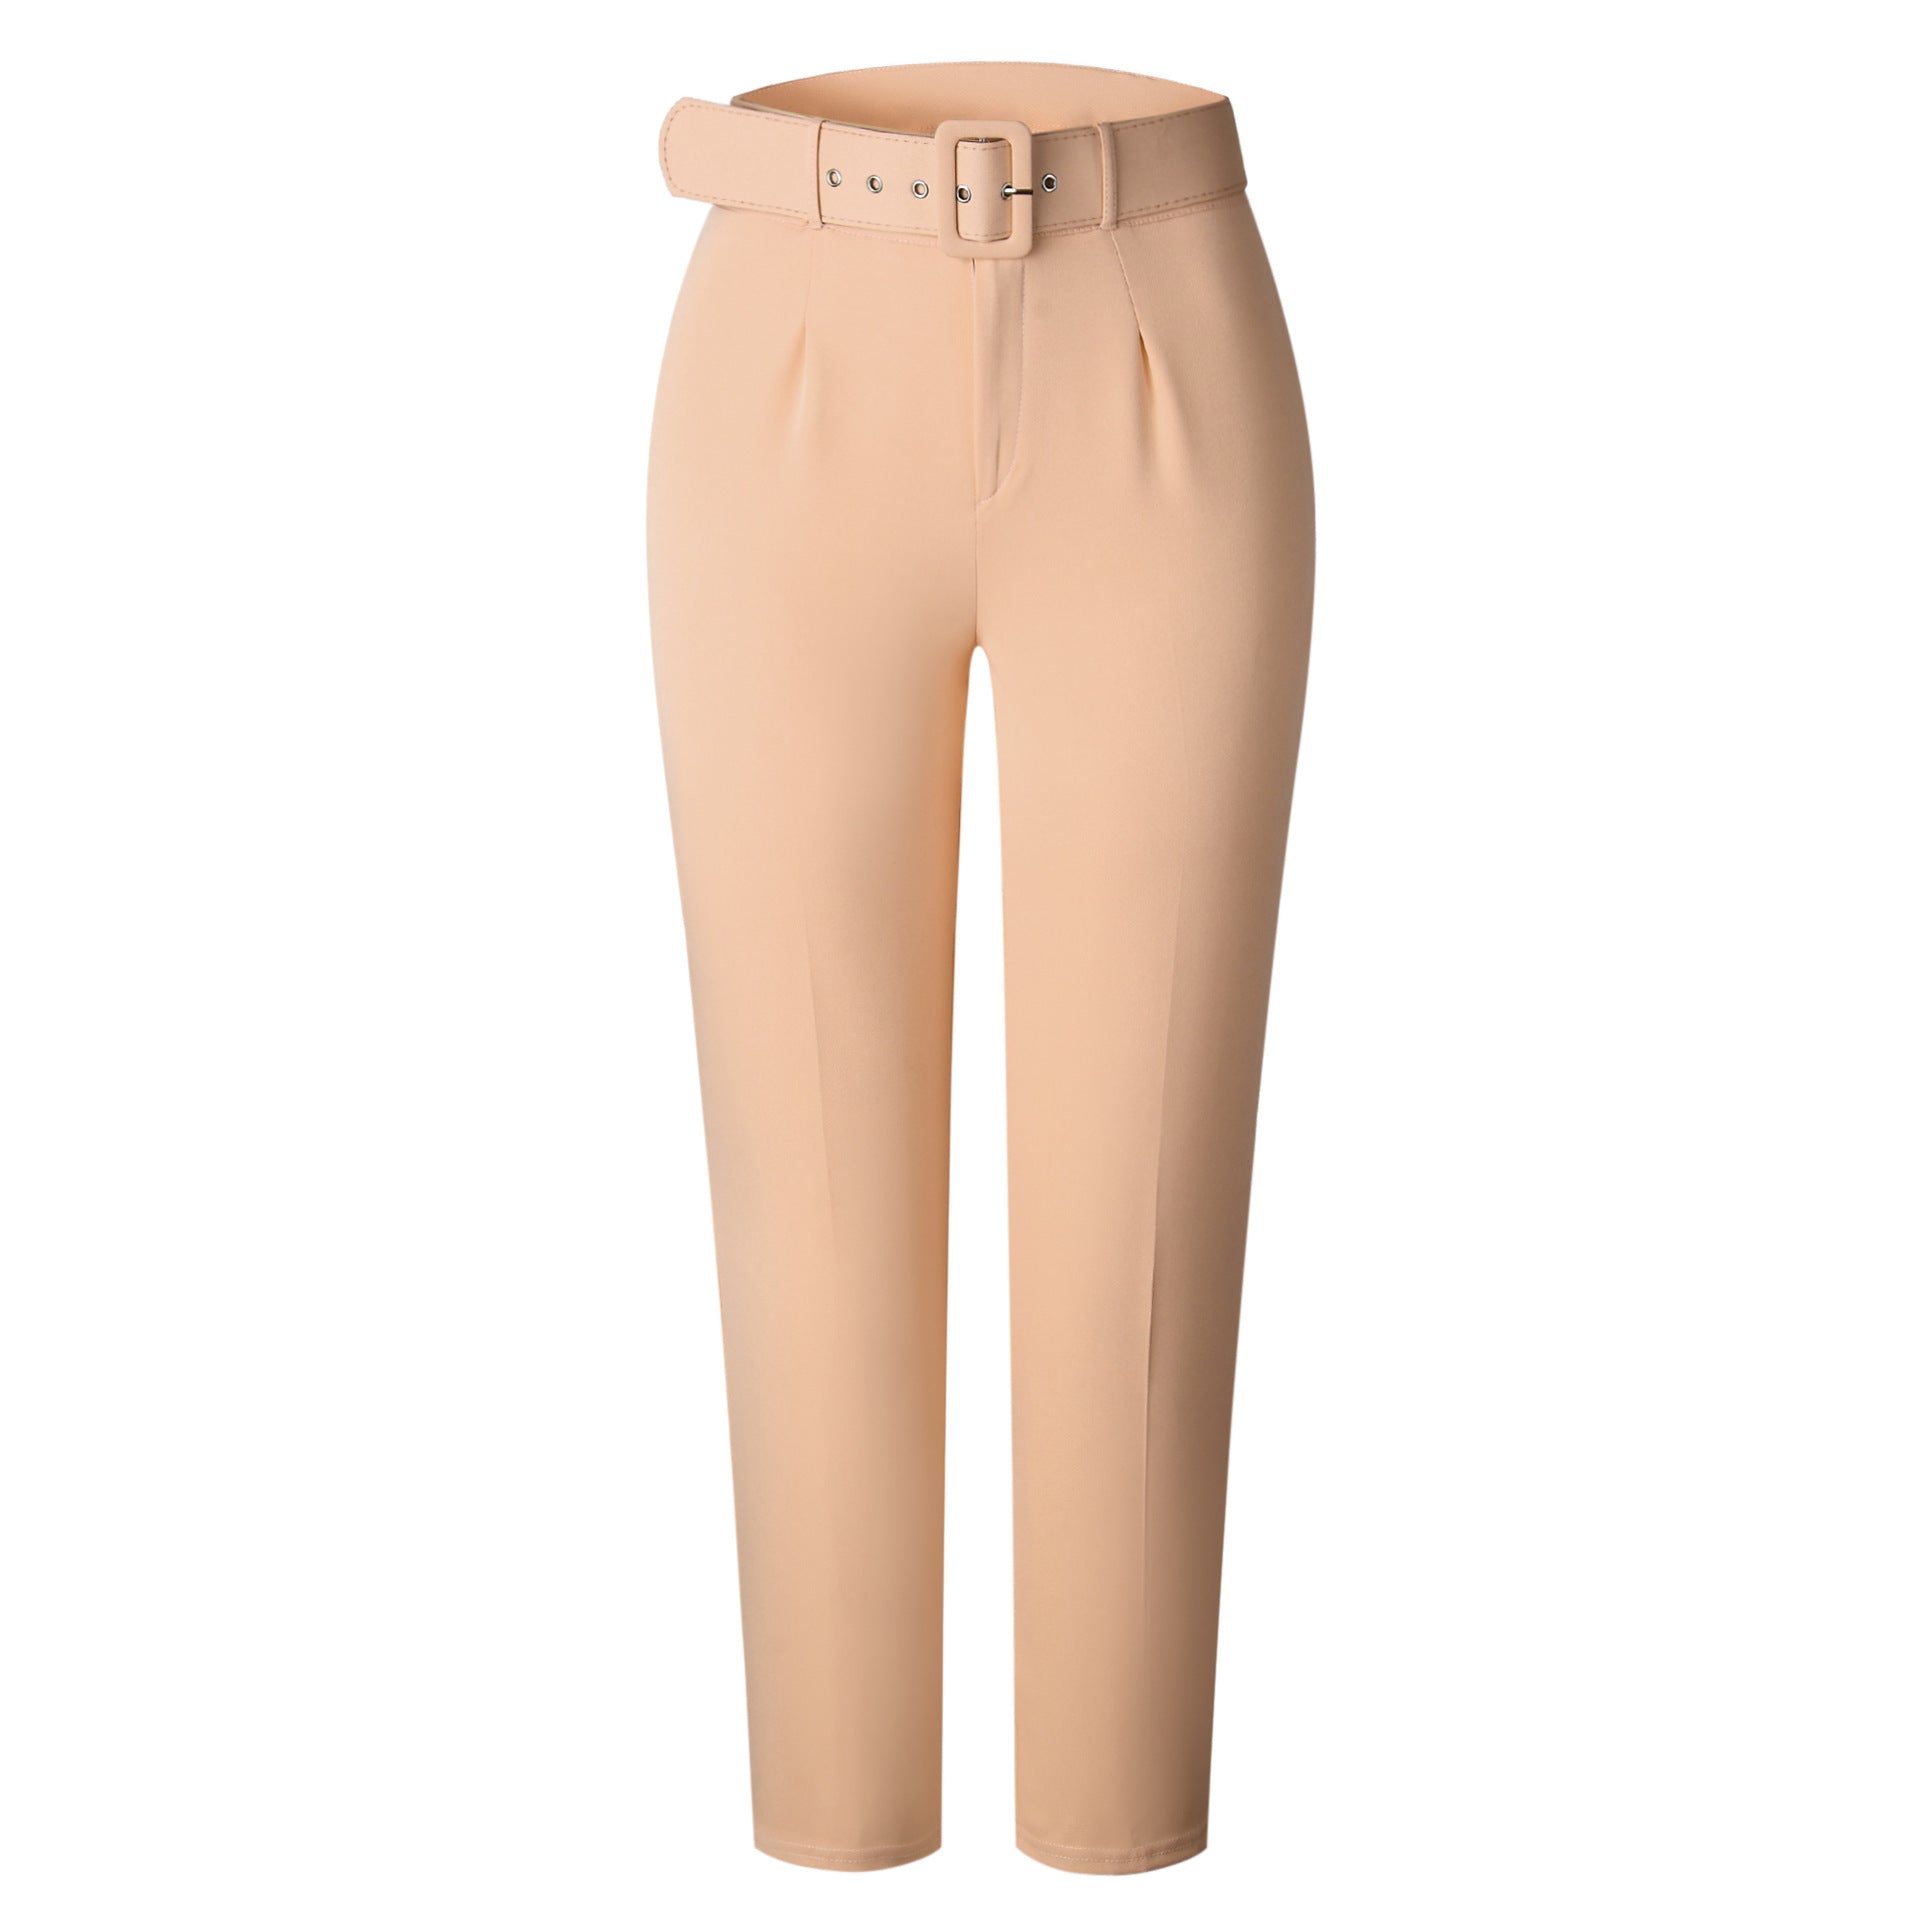 Women's High Cotton Blend Waist Casual Pants Slim Fit Slimming Trousers Autumn Suit